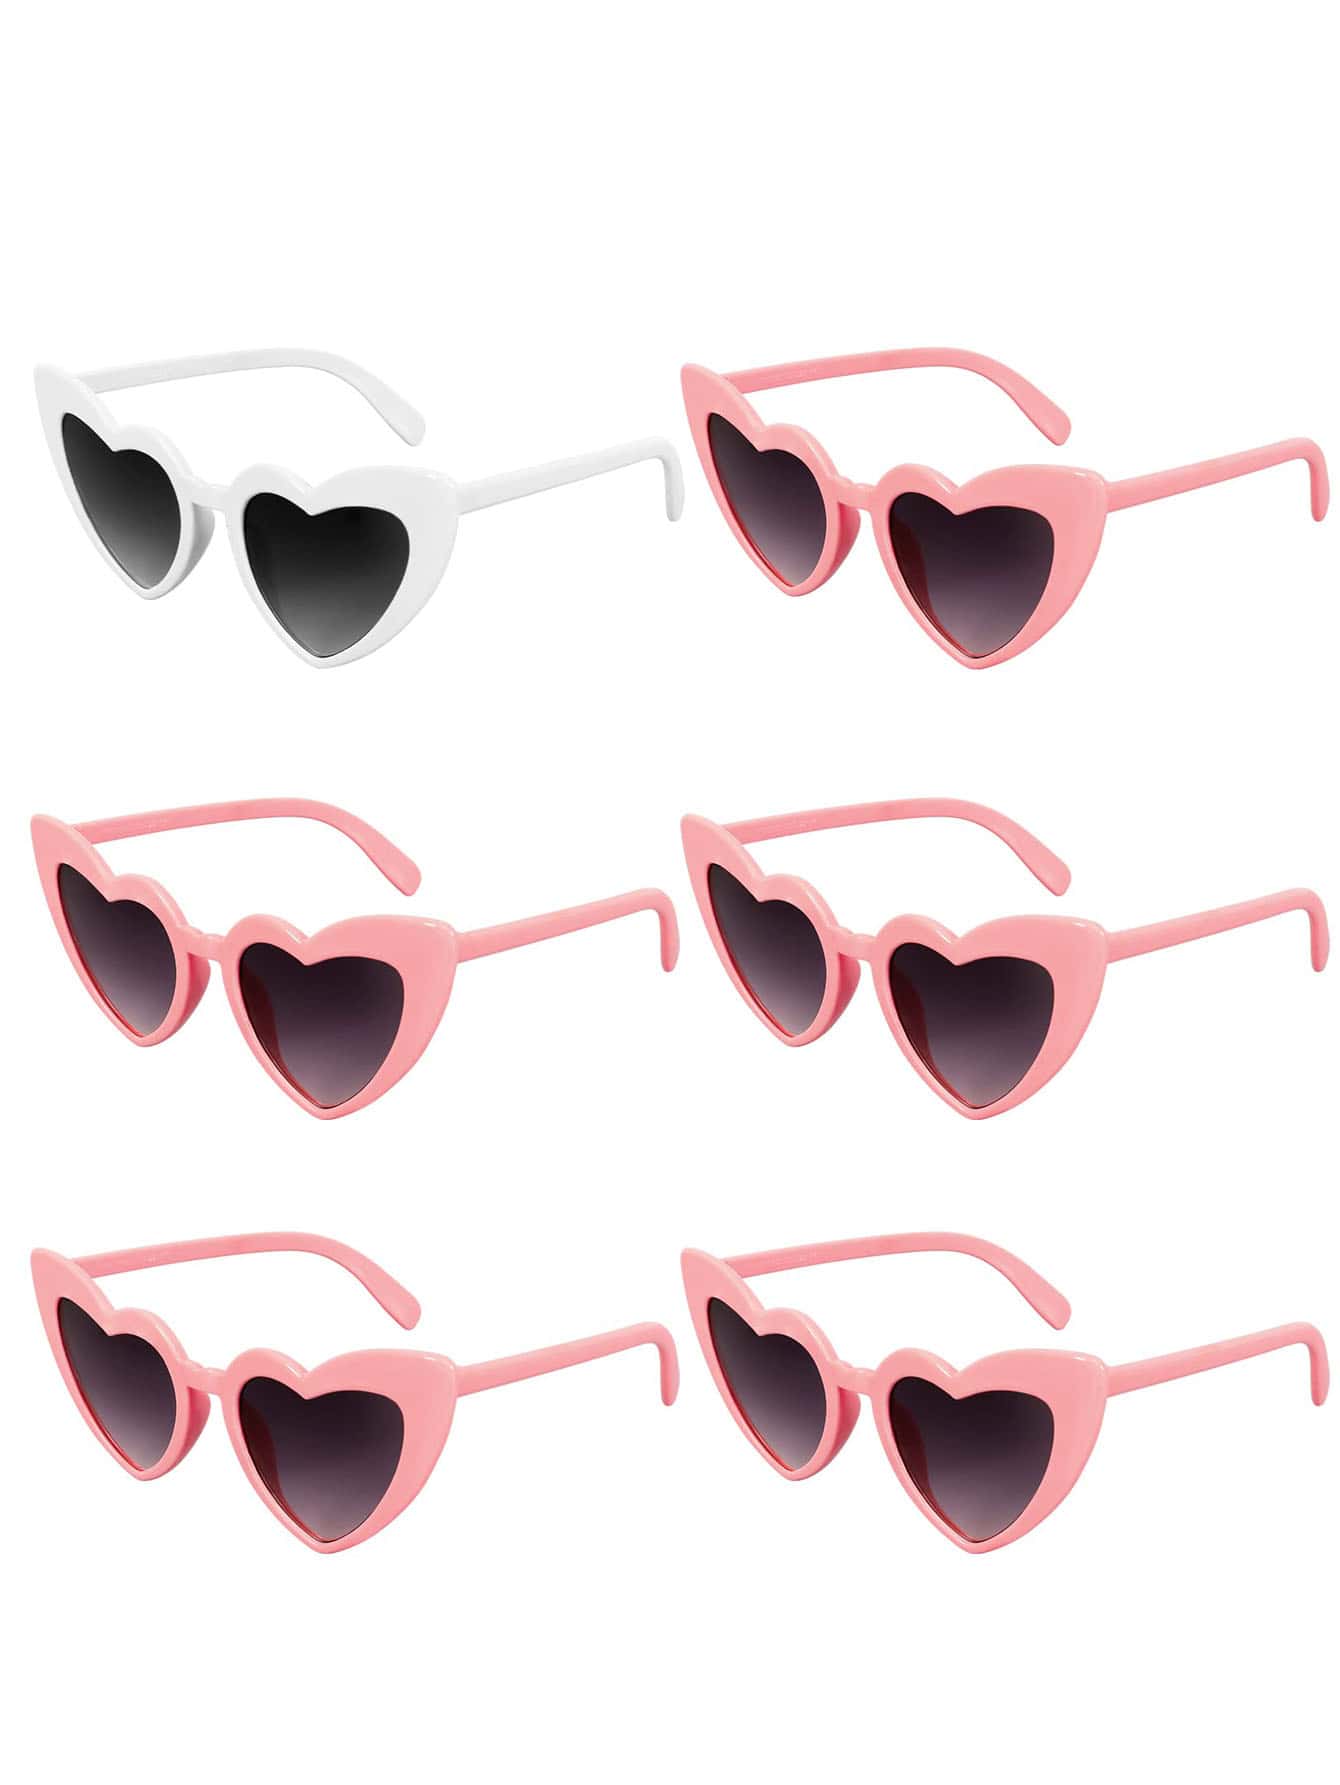 6 шт. солнцезащитные очки в форме сердца в стиле ретро, розовый